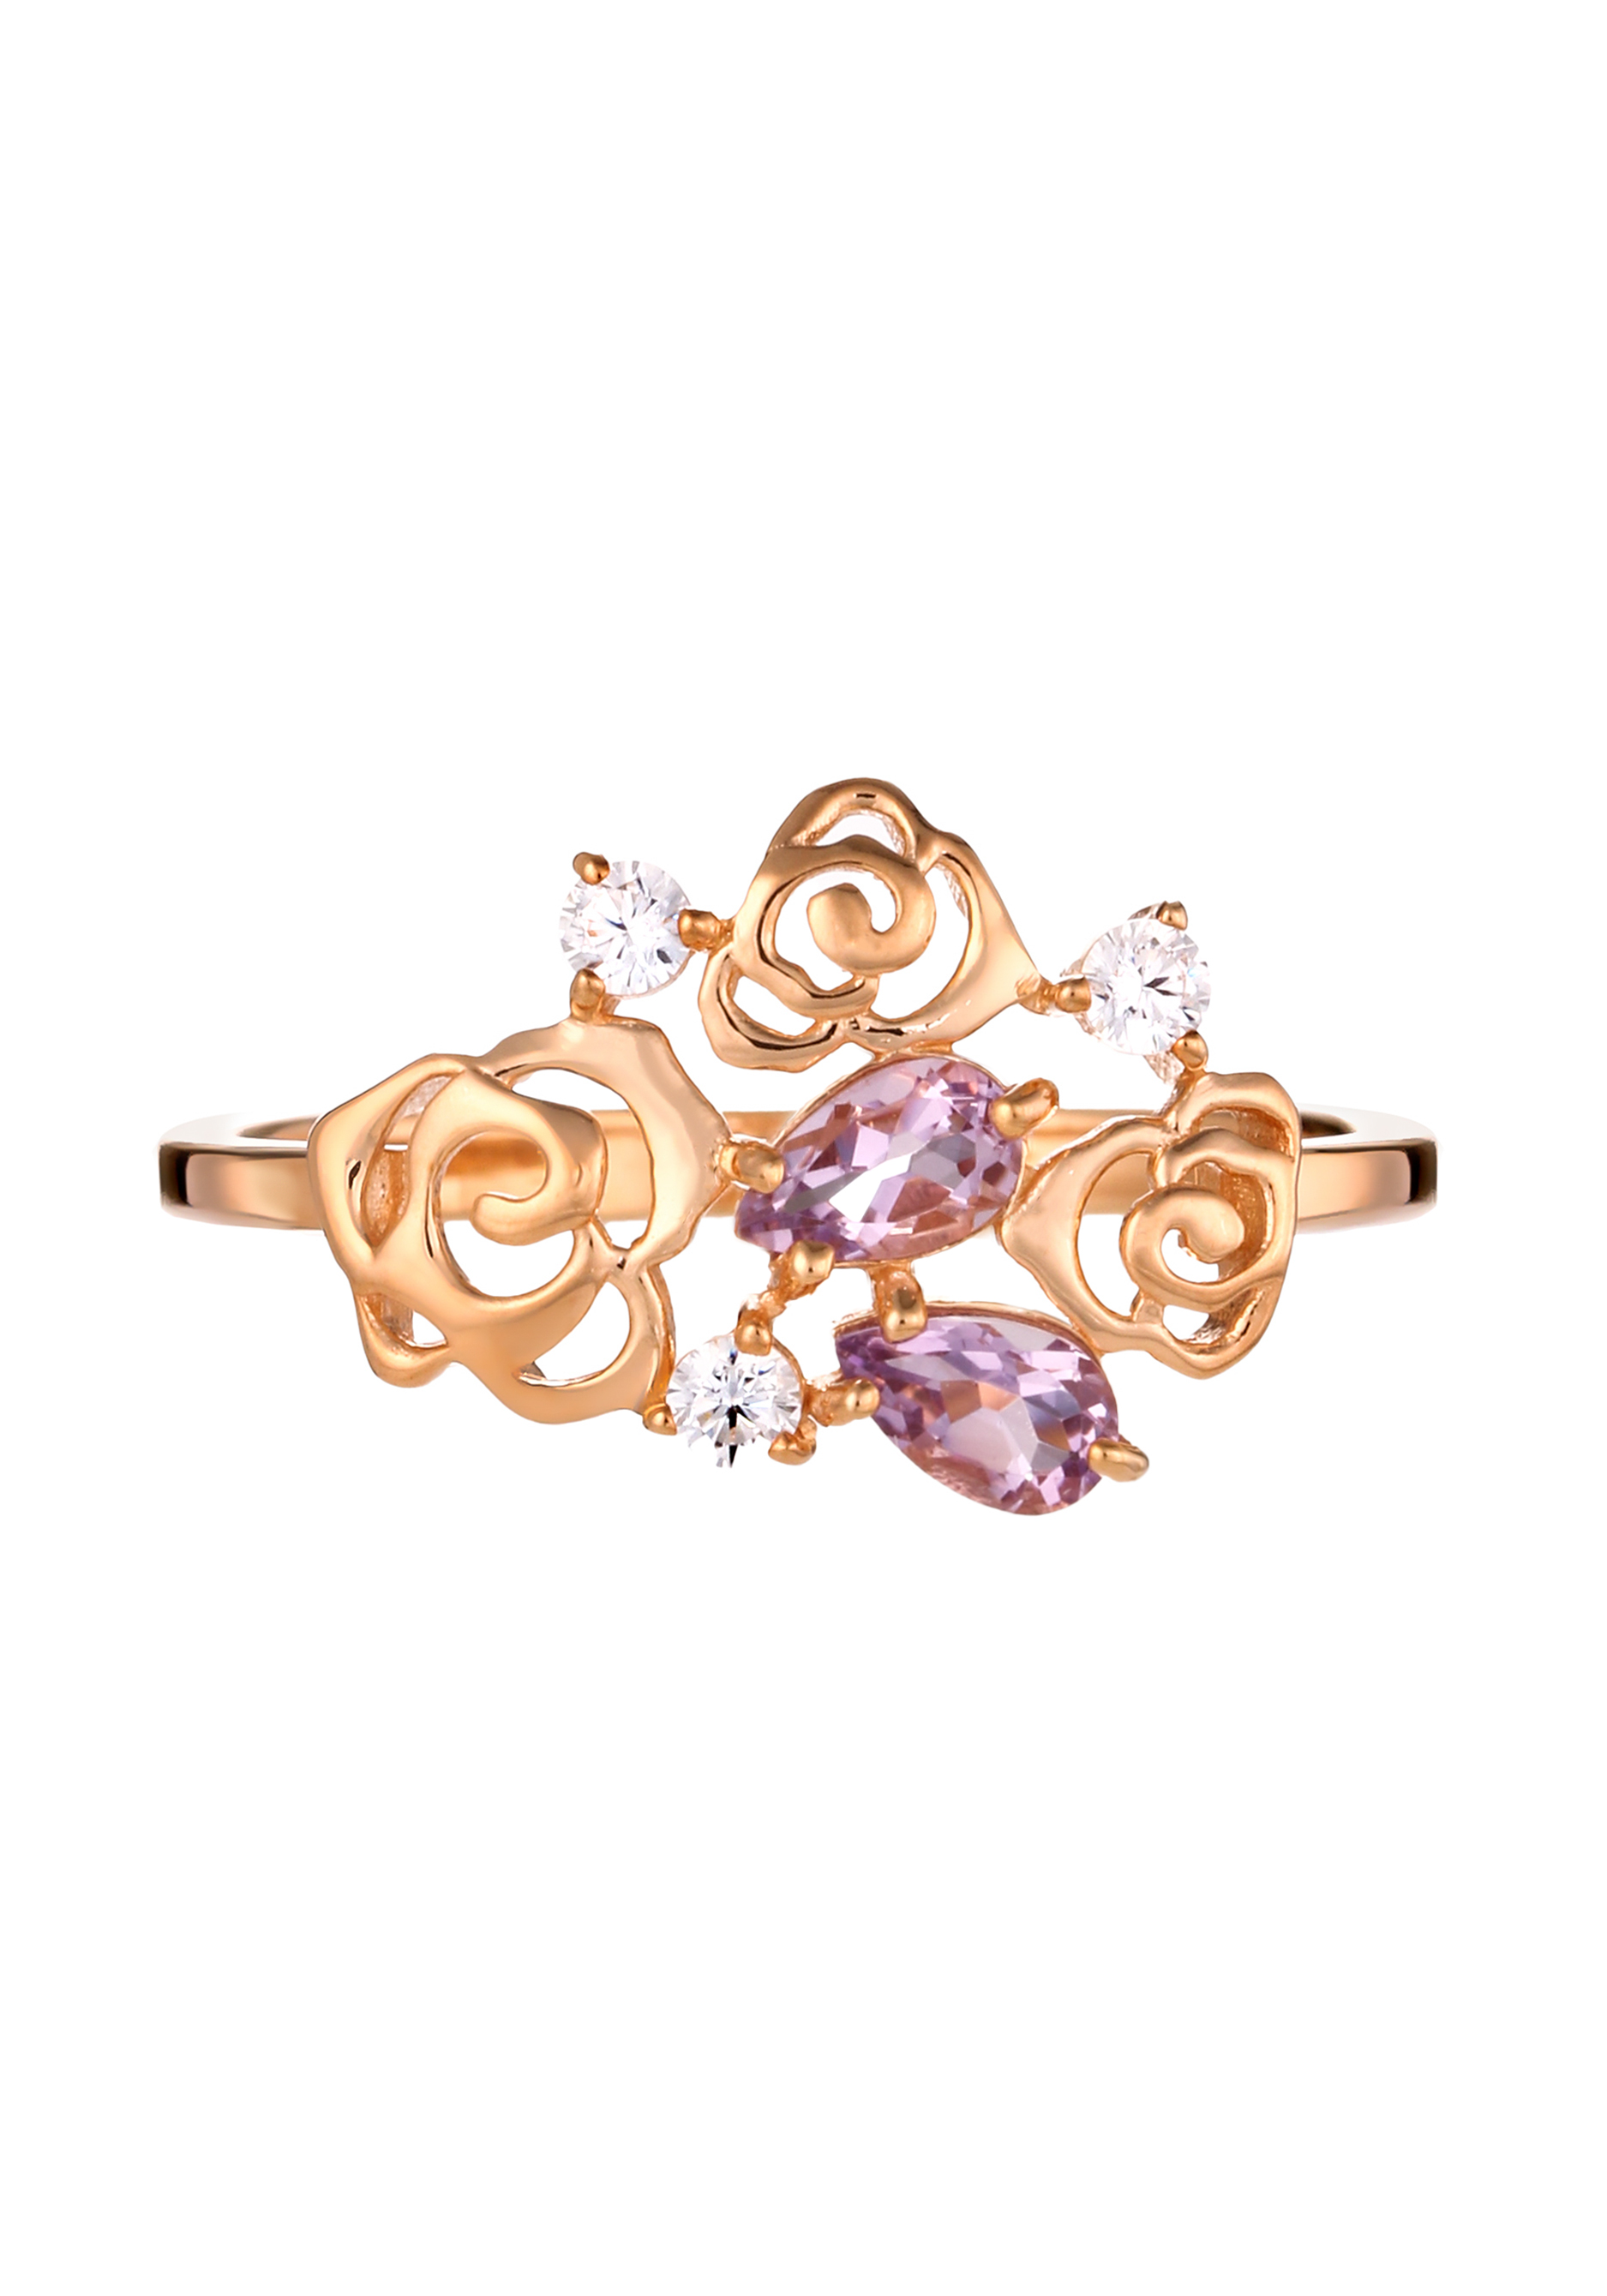 Кольцо серебряное "Прекрасная роза" Nouvelle, цвет фиолетовый, размер 19 кластер - фото 2